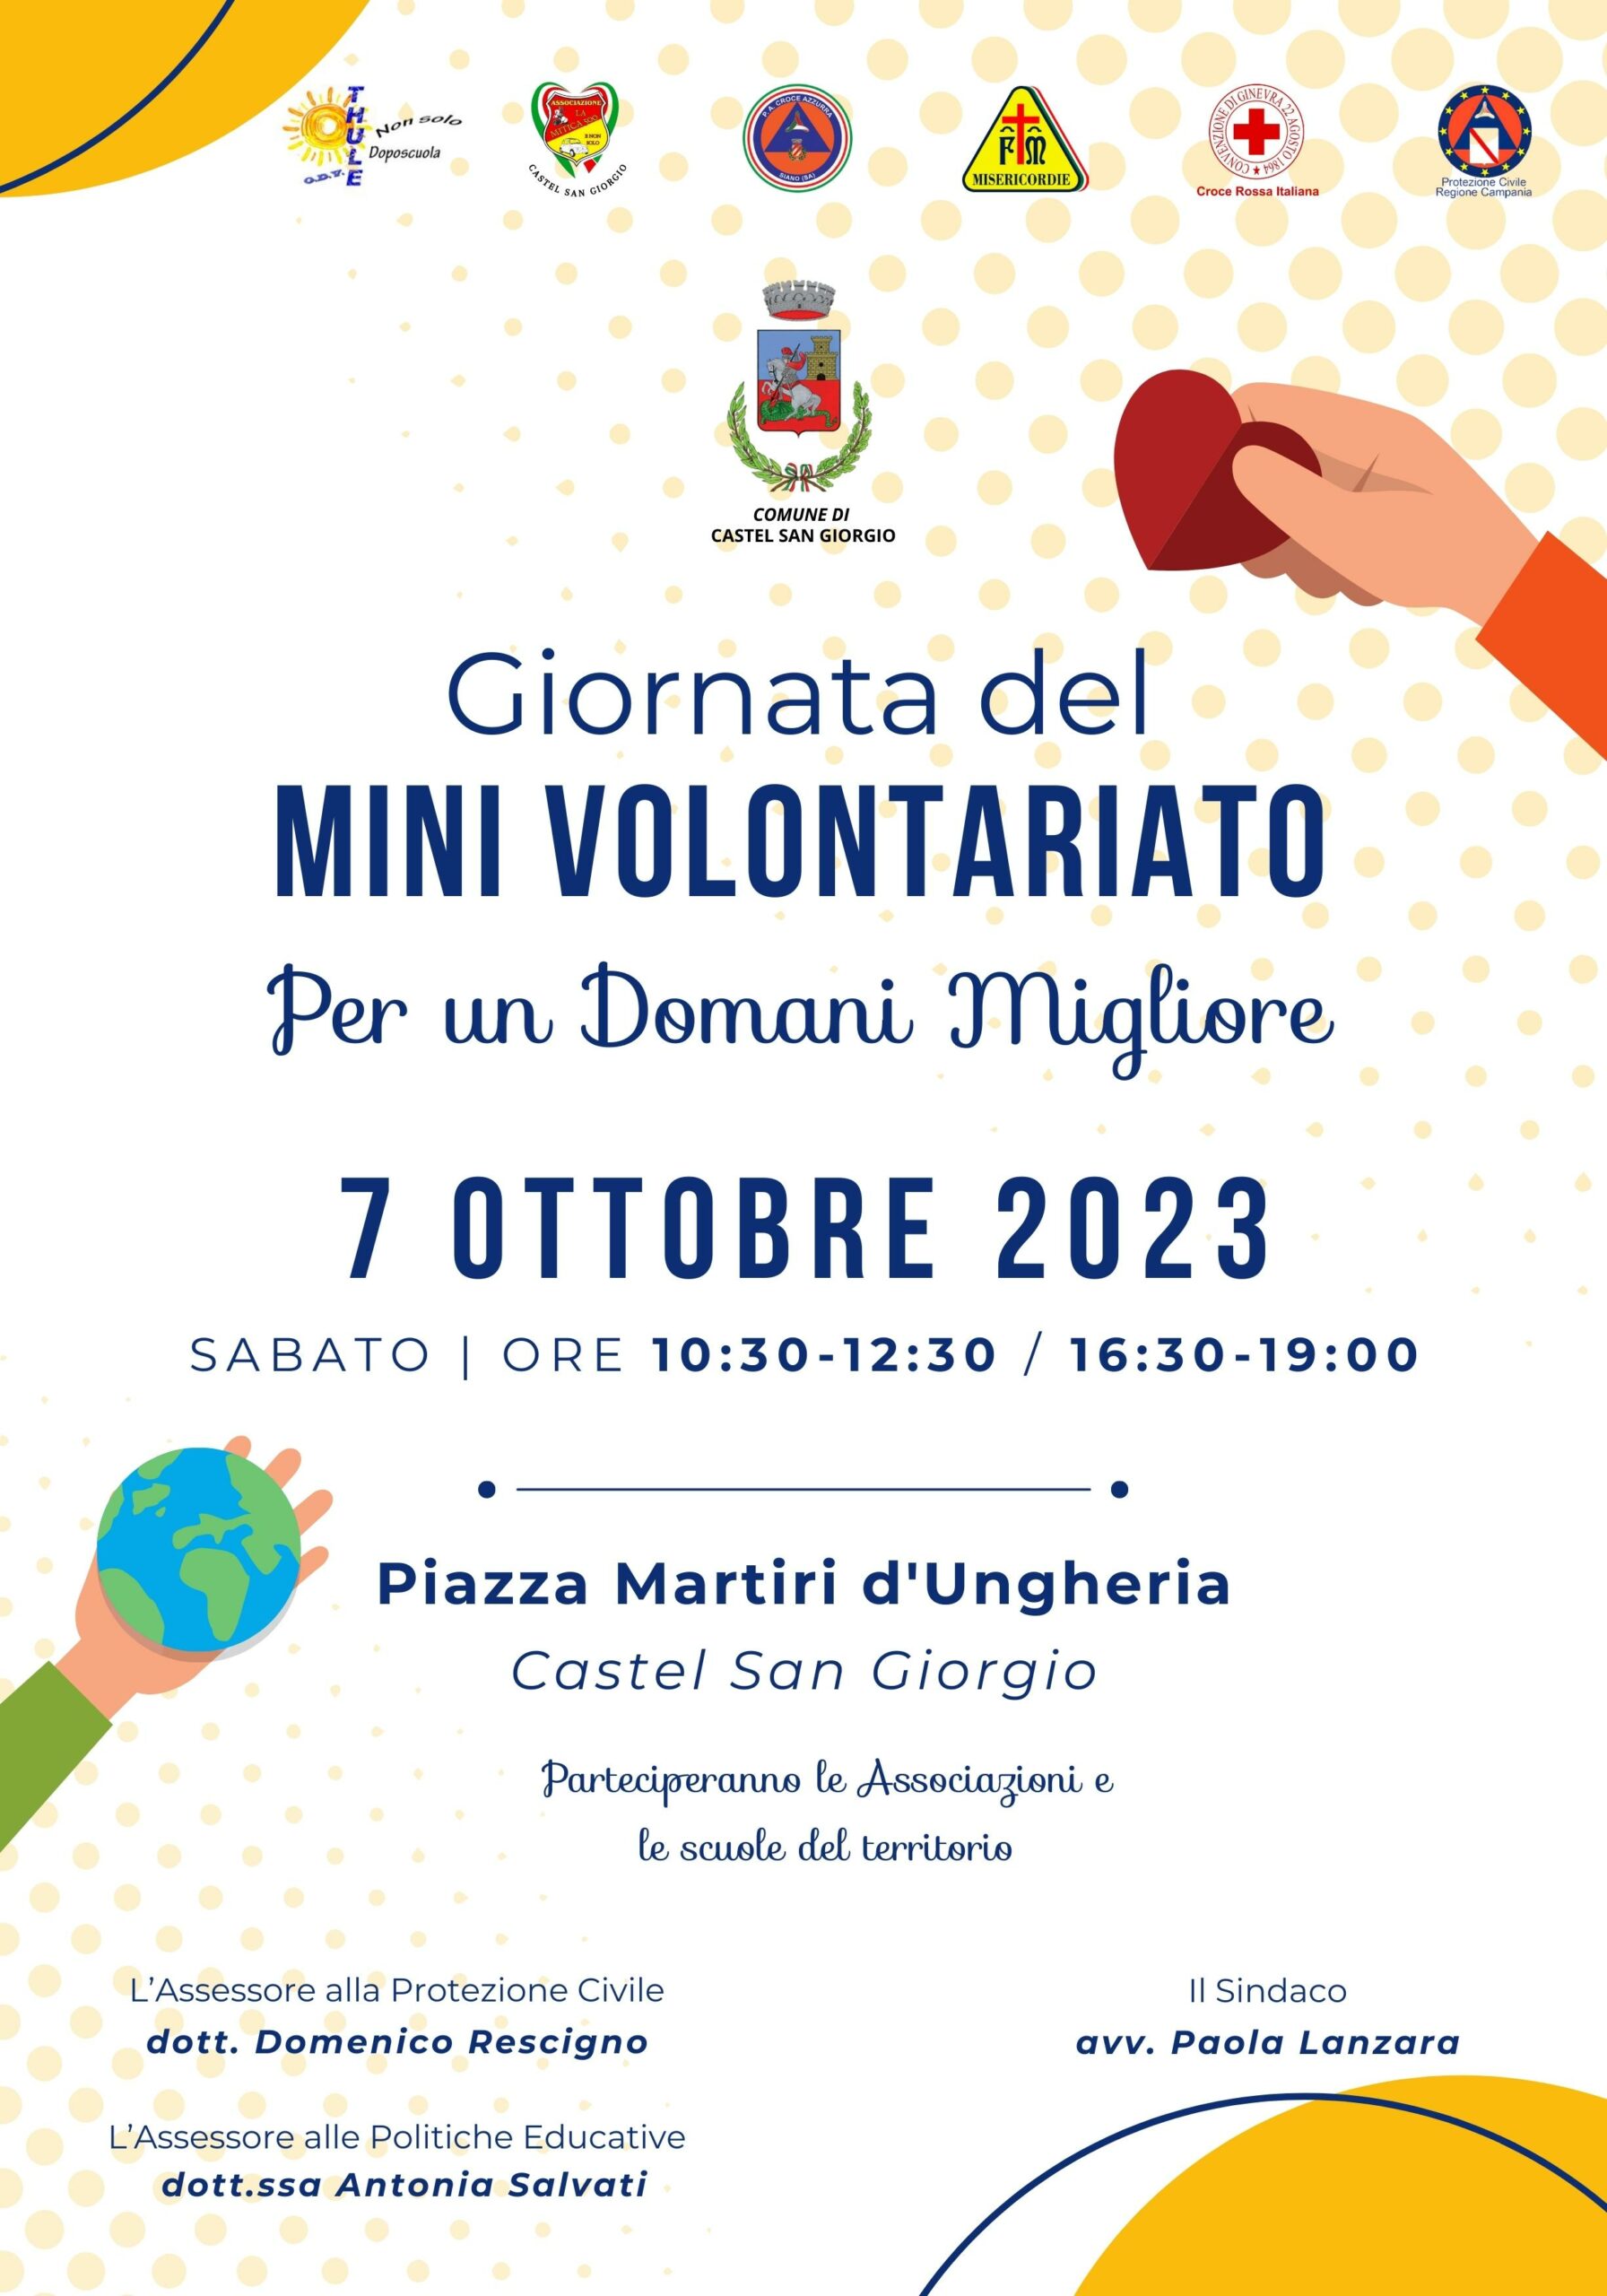 Castel San Giorgio: Giornata del Mini Volontariato “Per un domani migliore”